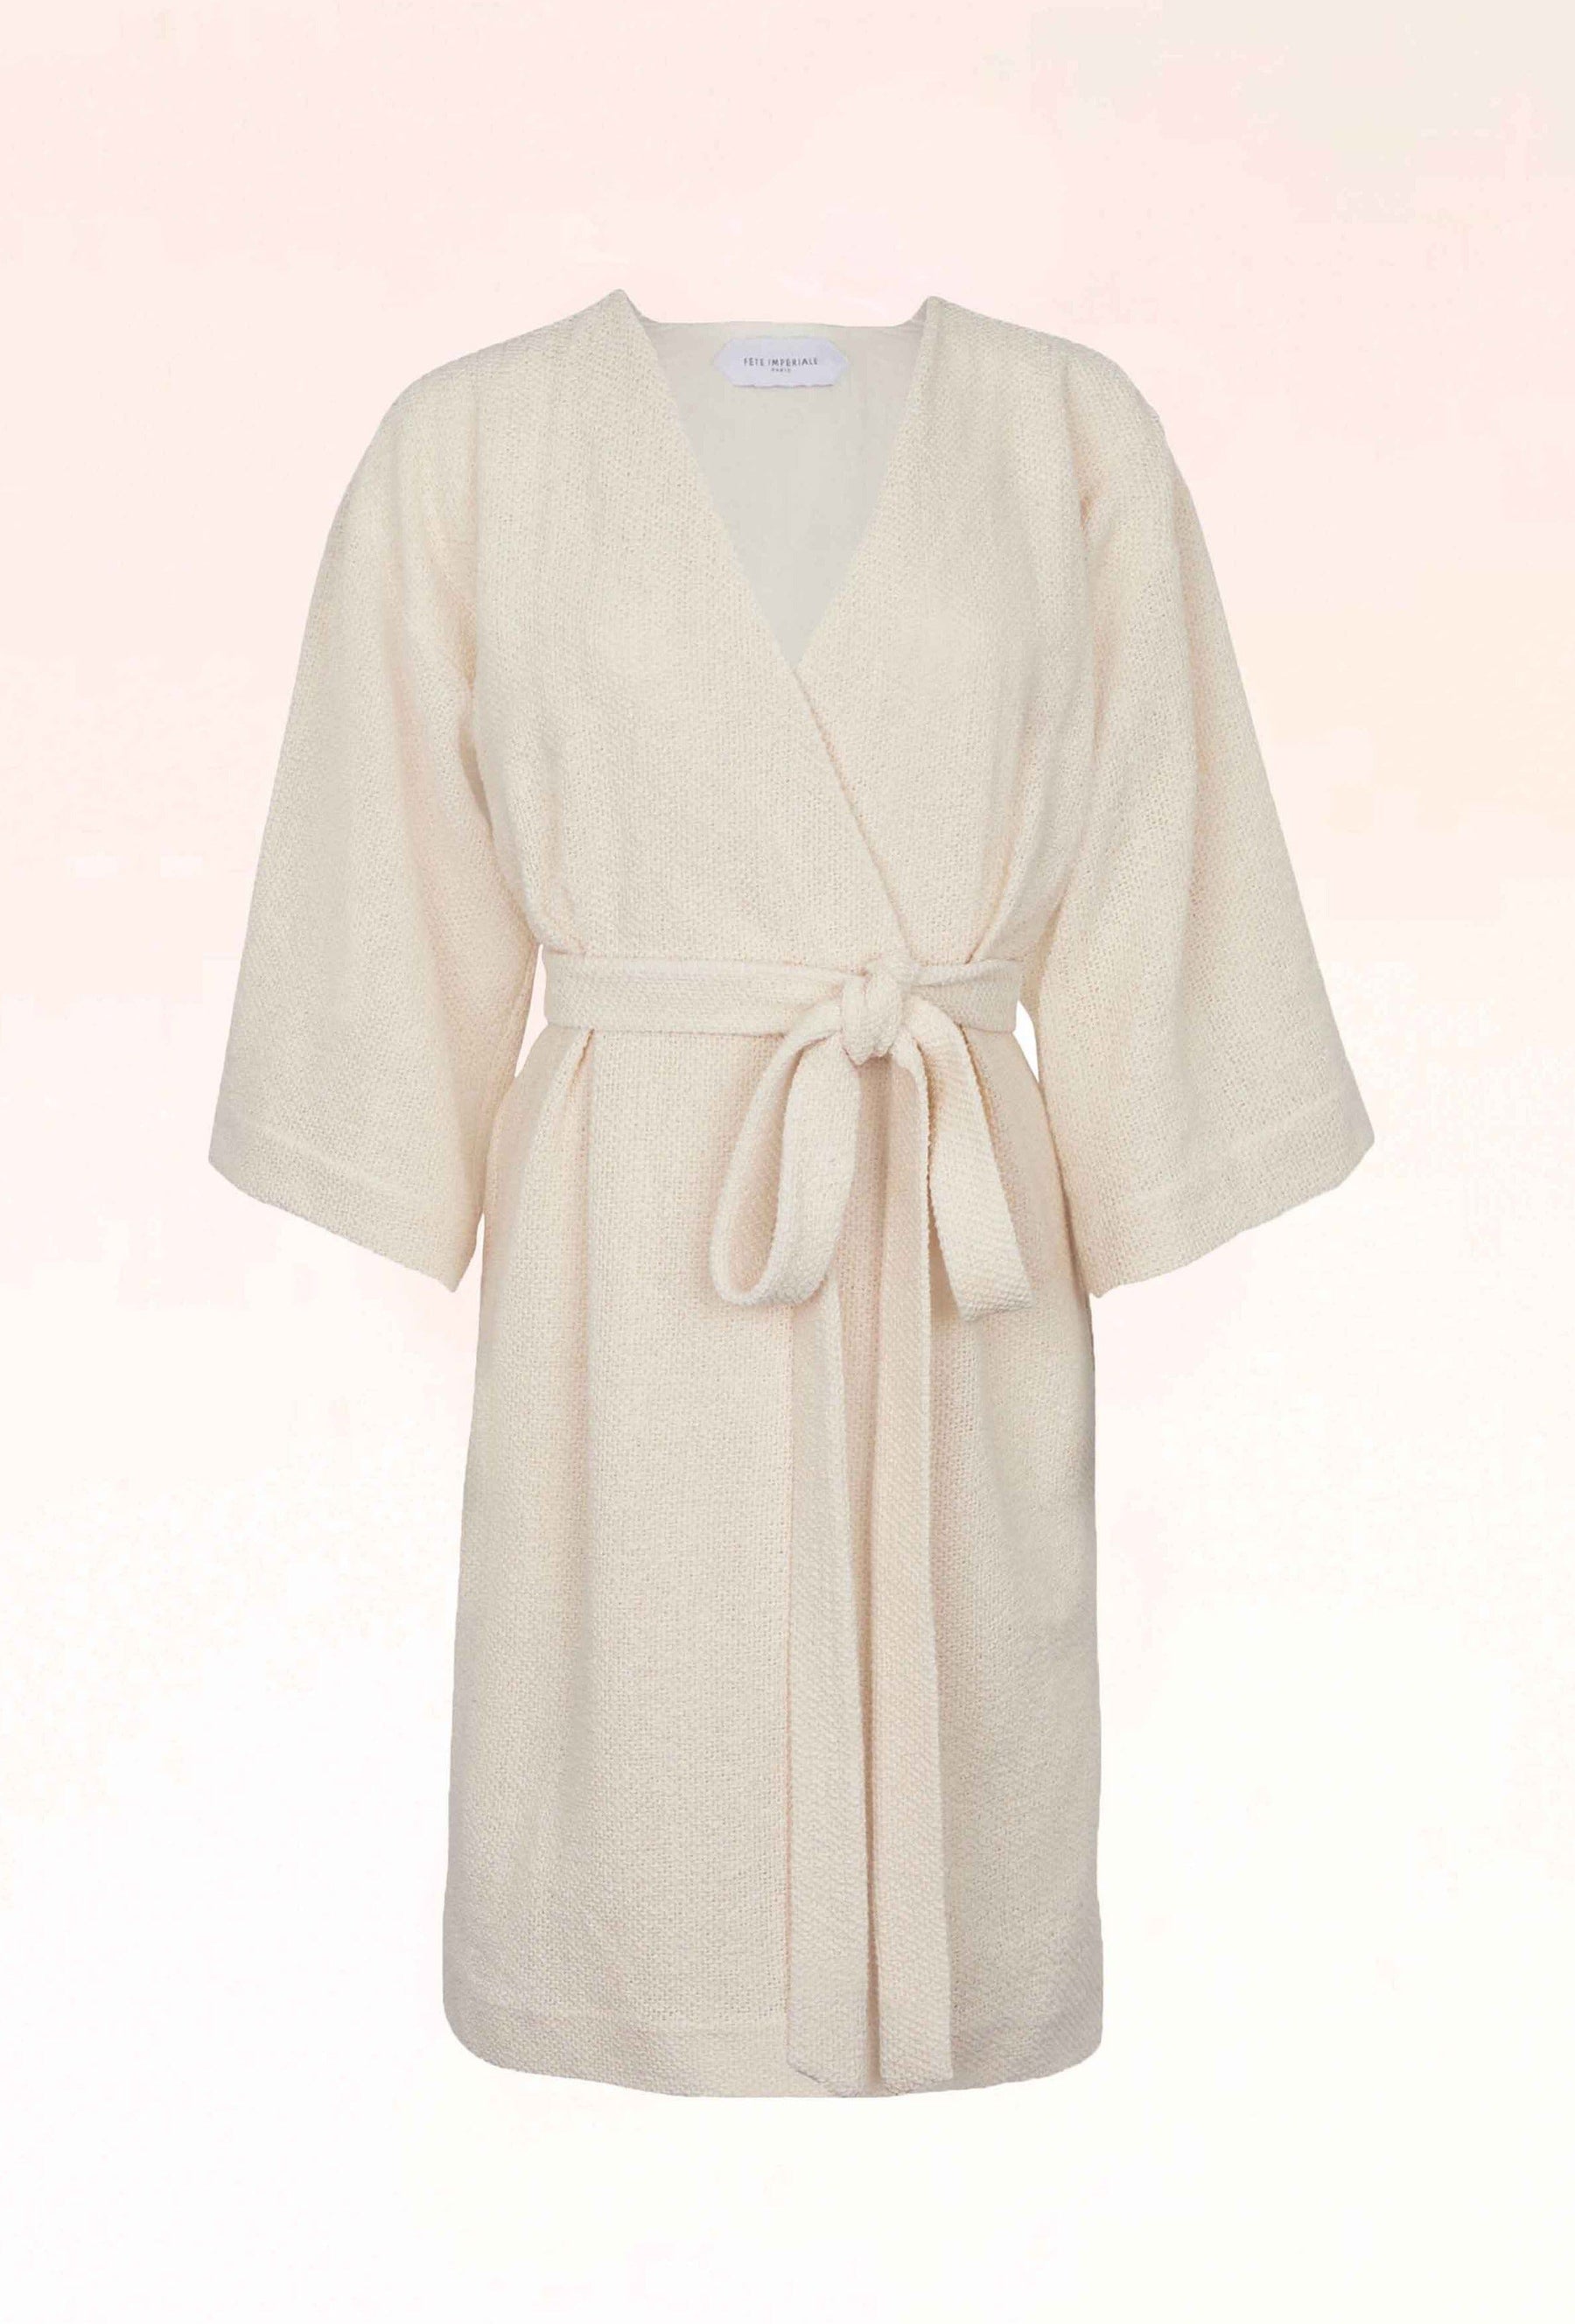 FAYE - Short kimono dress 3/4 sleeves in lace mesh Ecru Dress Fête Impériale